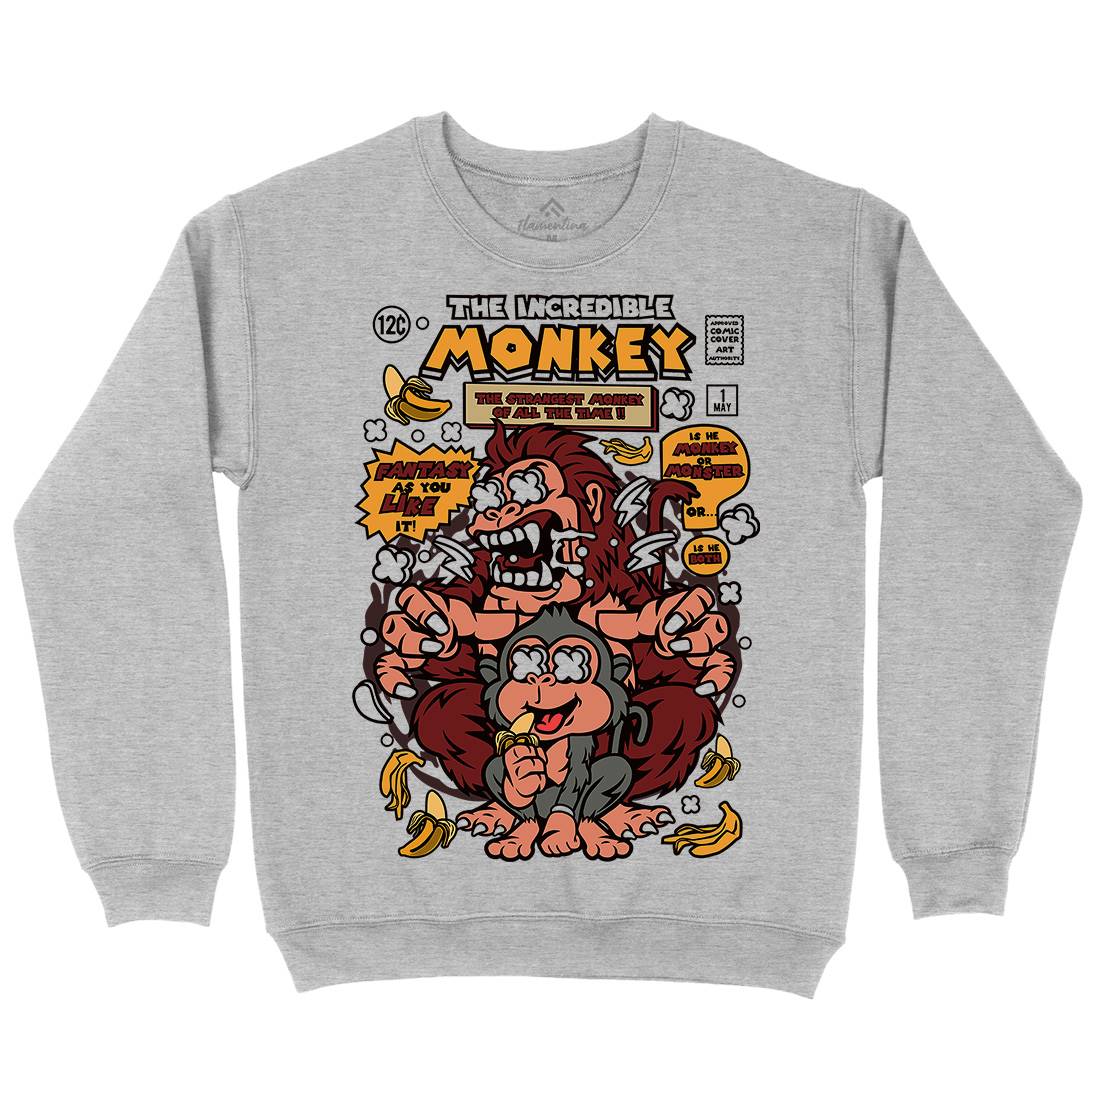 Incredible Monkey Kids Crew Neck Sweatshirt Animals C570